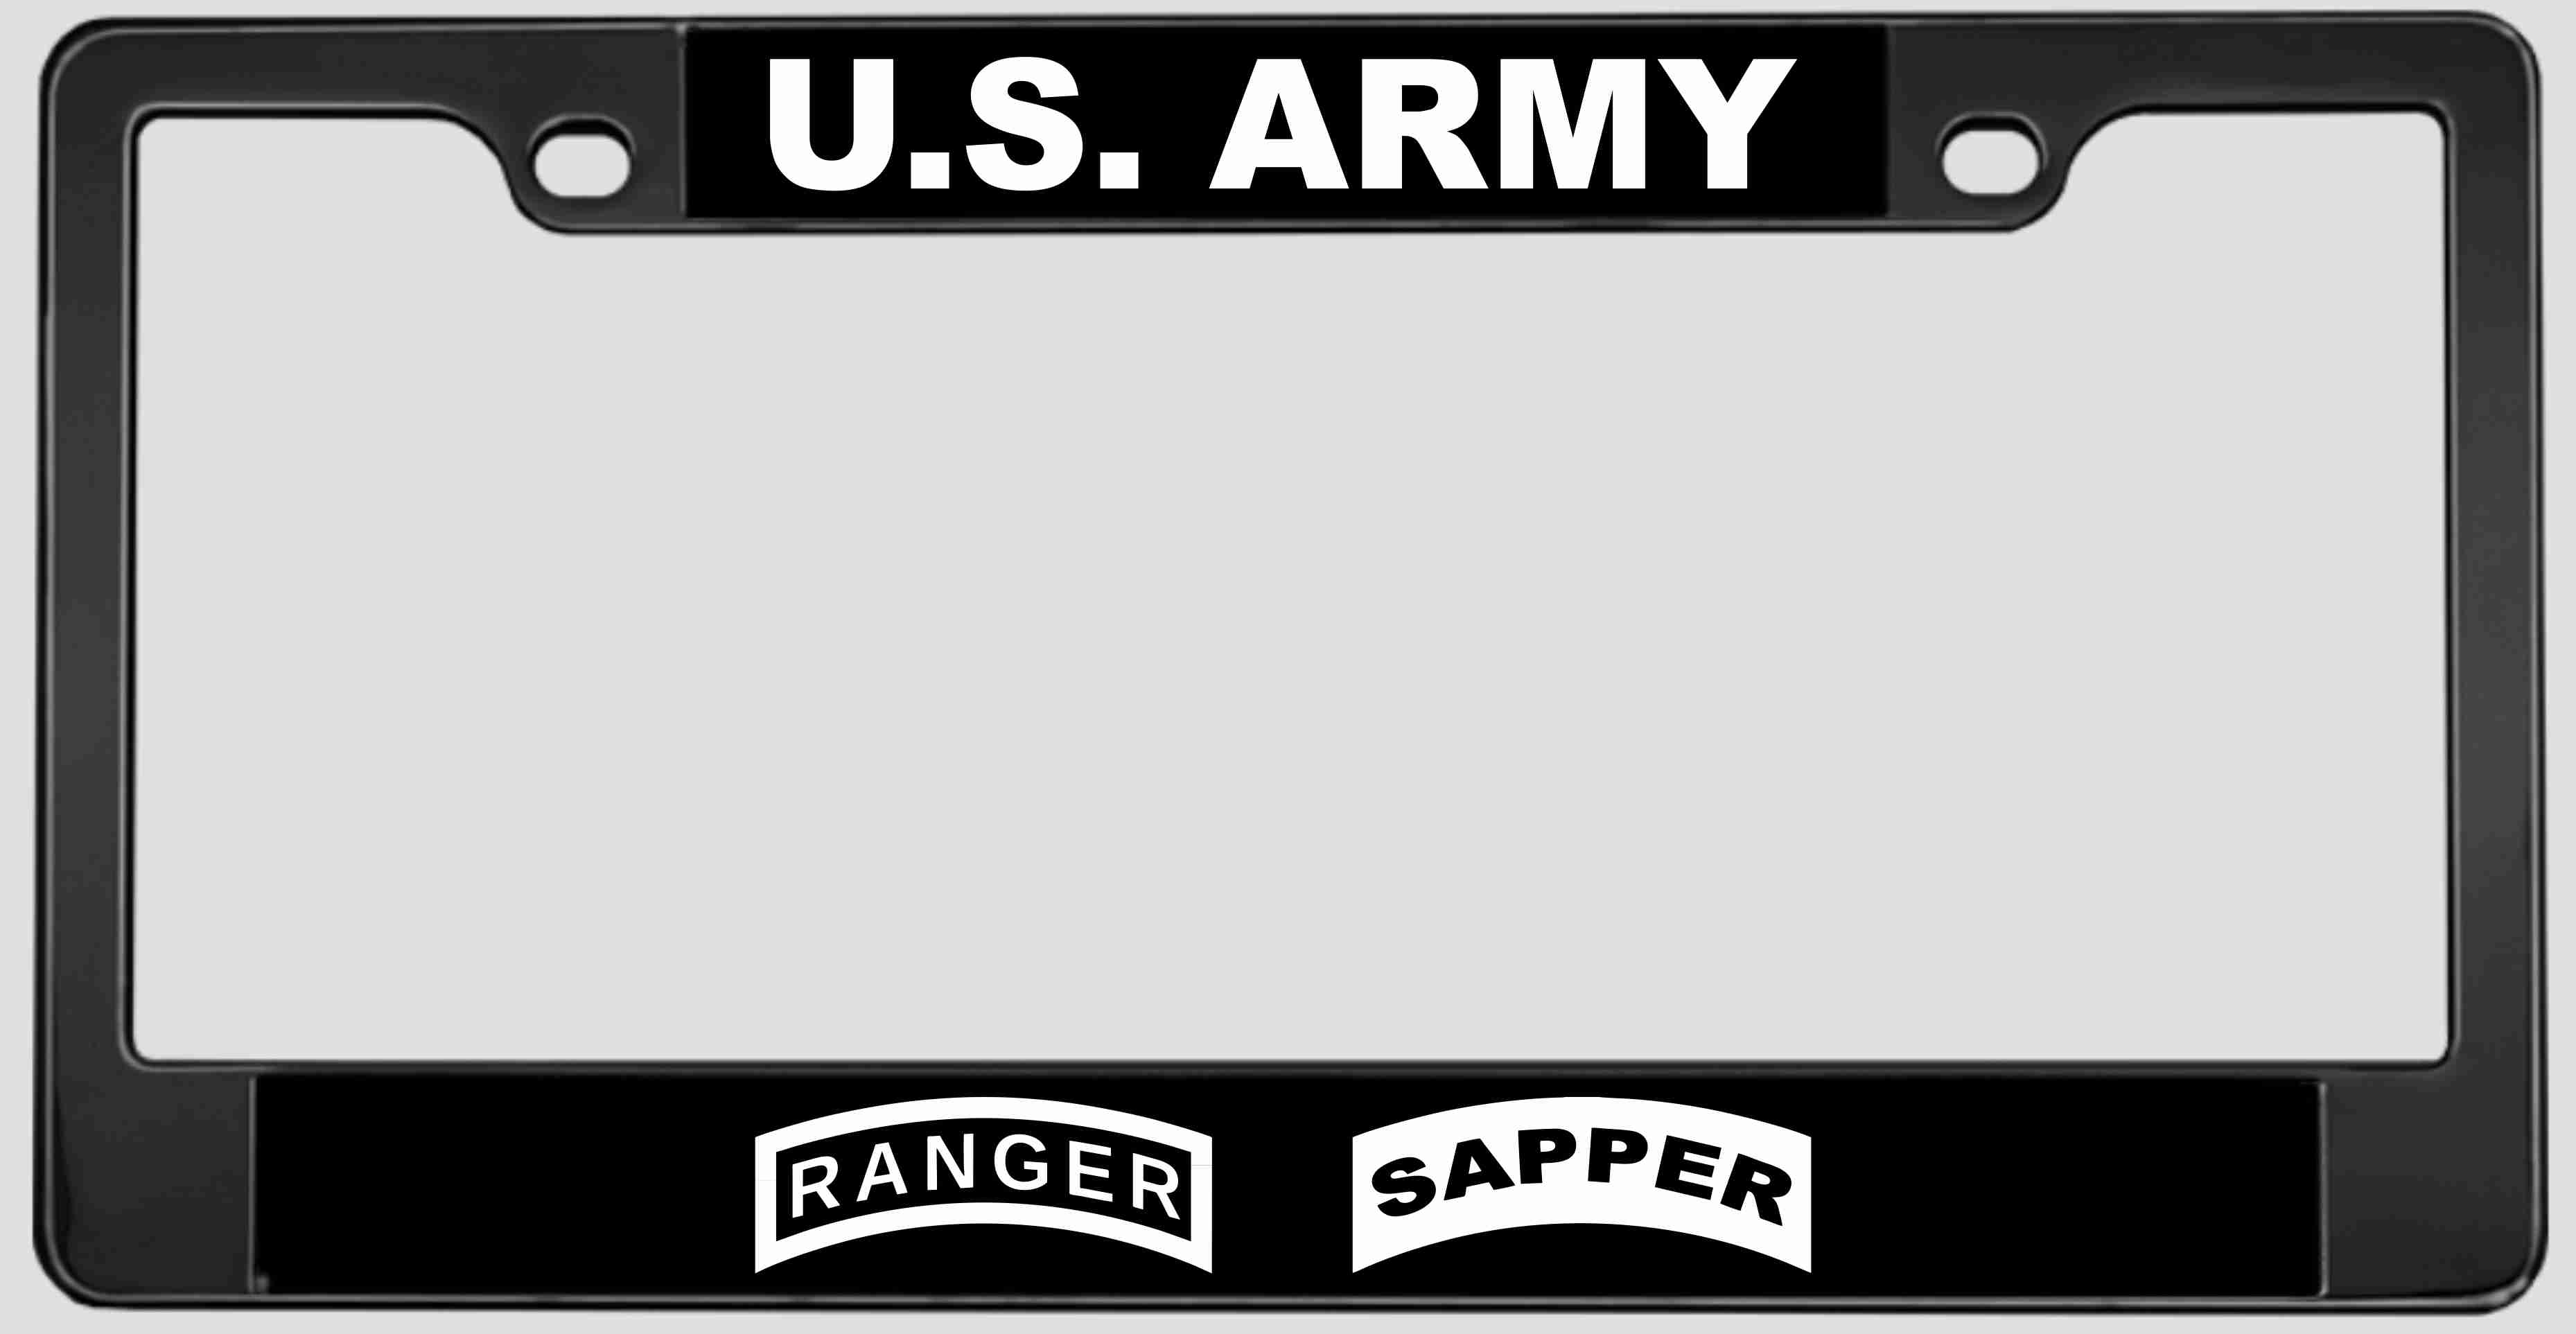 US Army - custom license plate frame